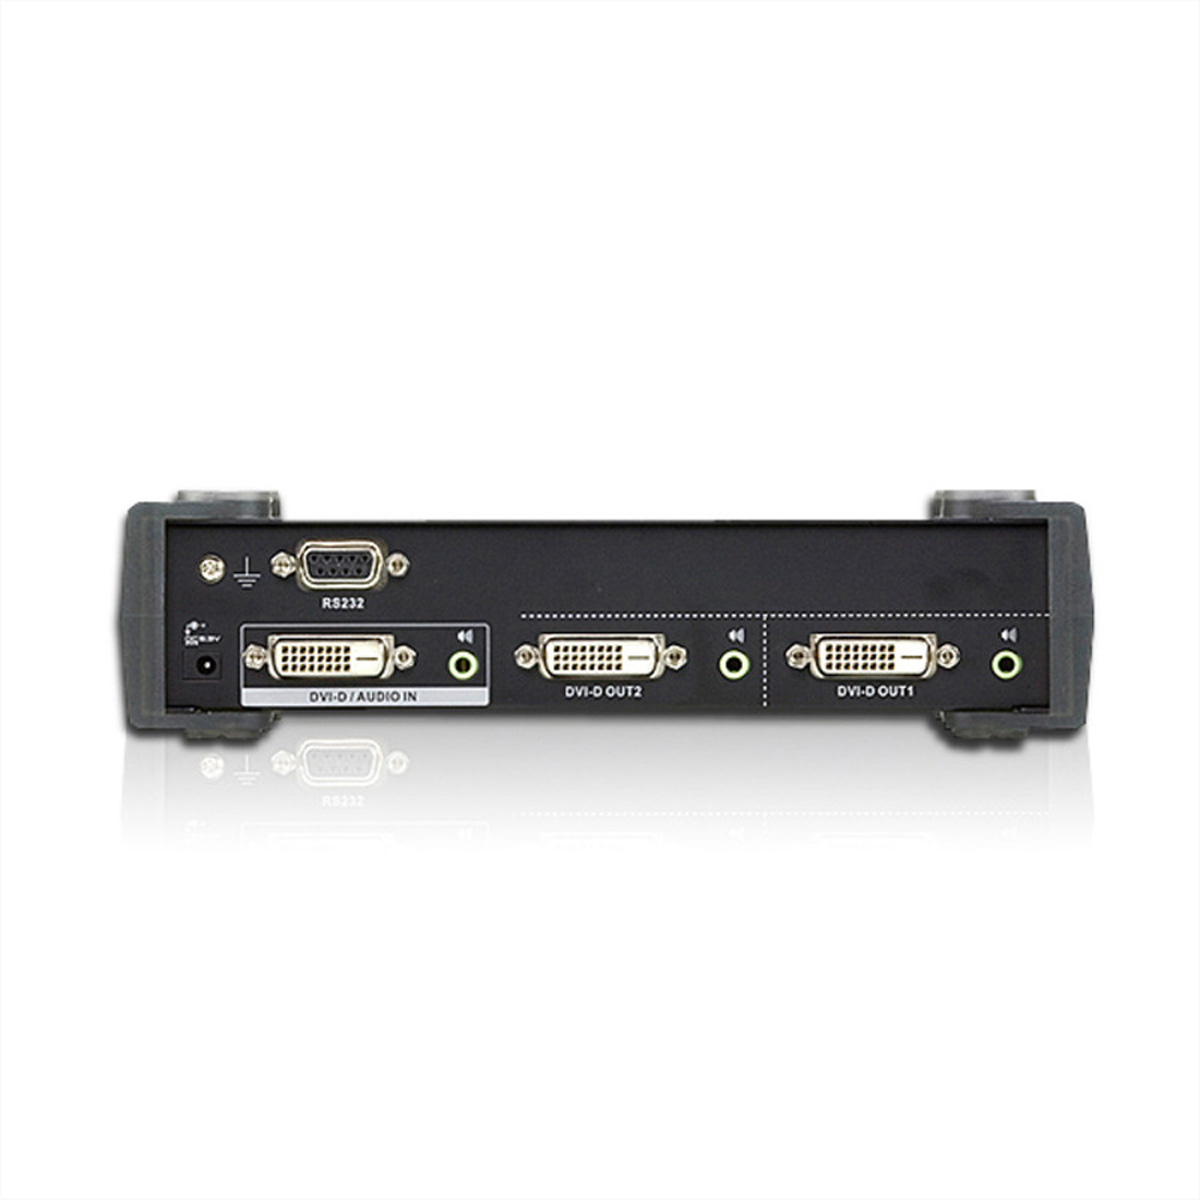 ATEN VS172 DVI Link 2fach DVI-Video-Splitter Dual Video-/Audiosplitter